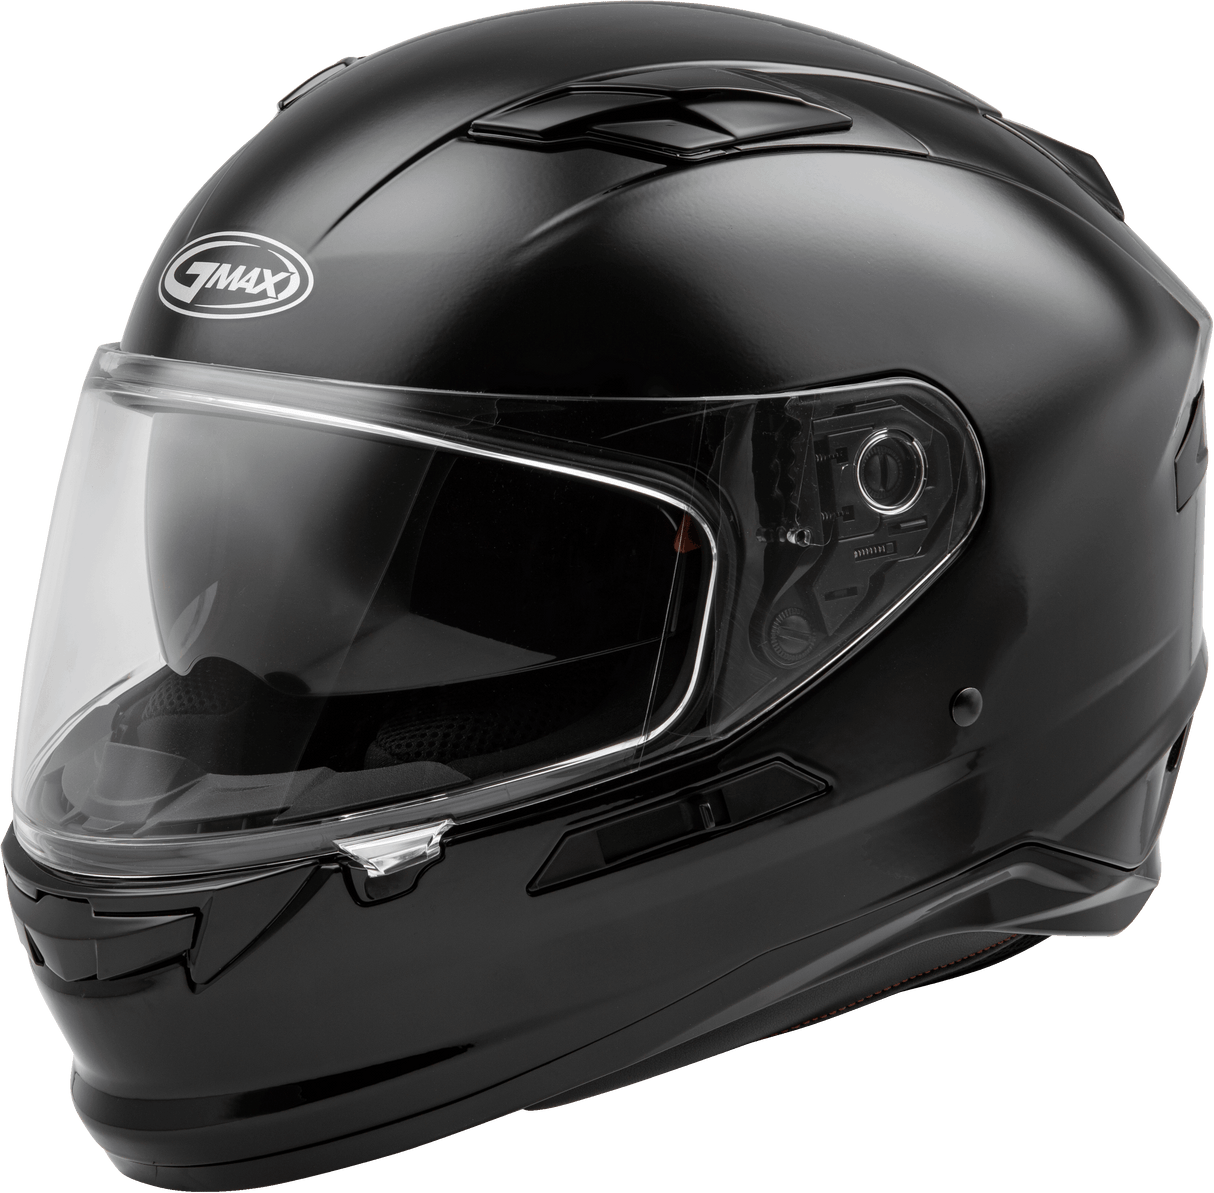 GMAX Ff 98 Full Face Helmet Black 2x for Powersports